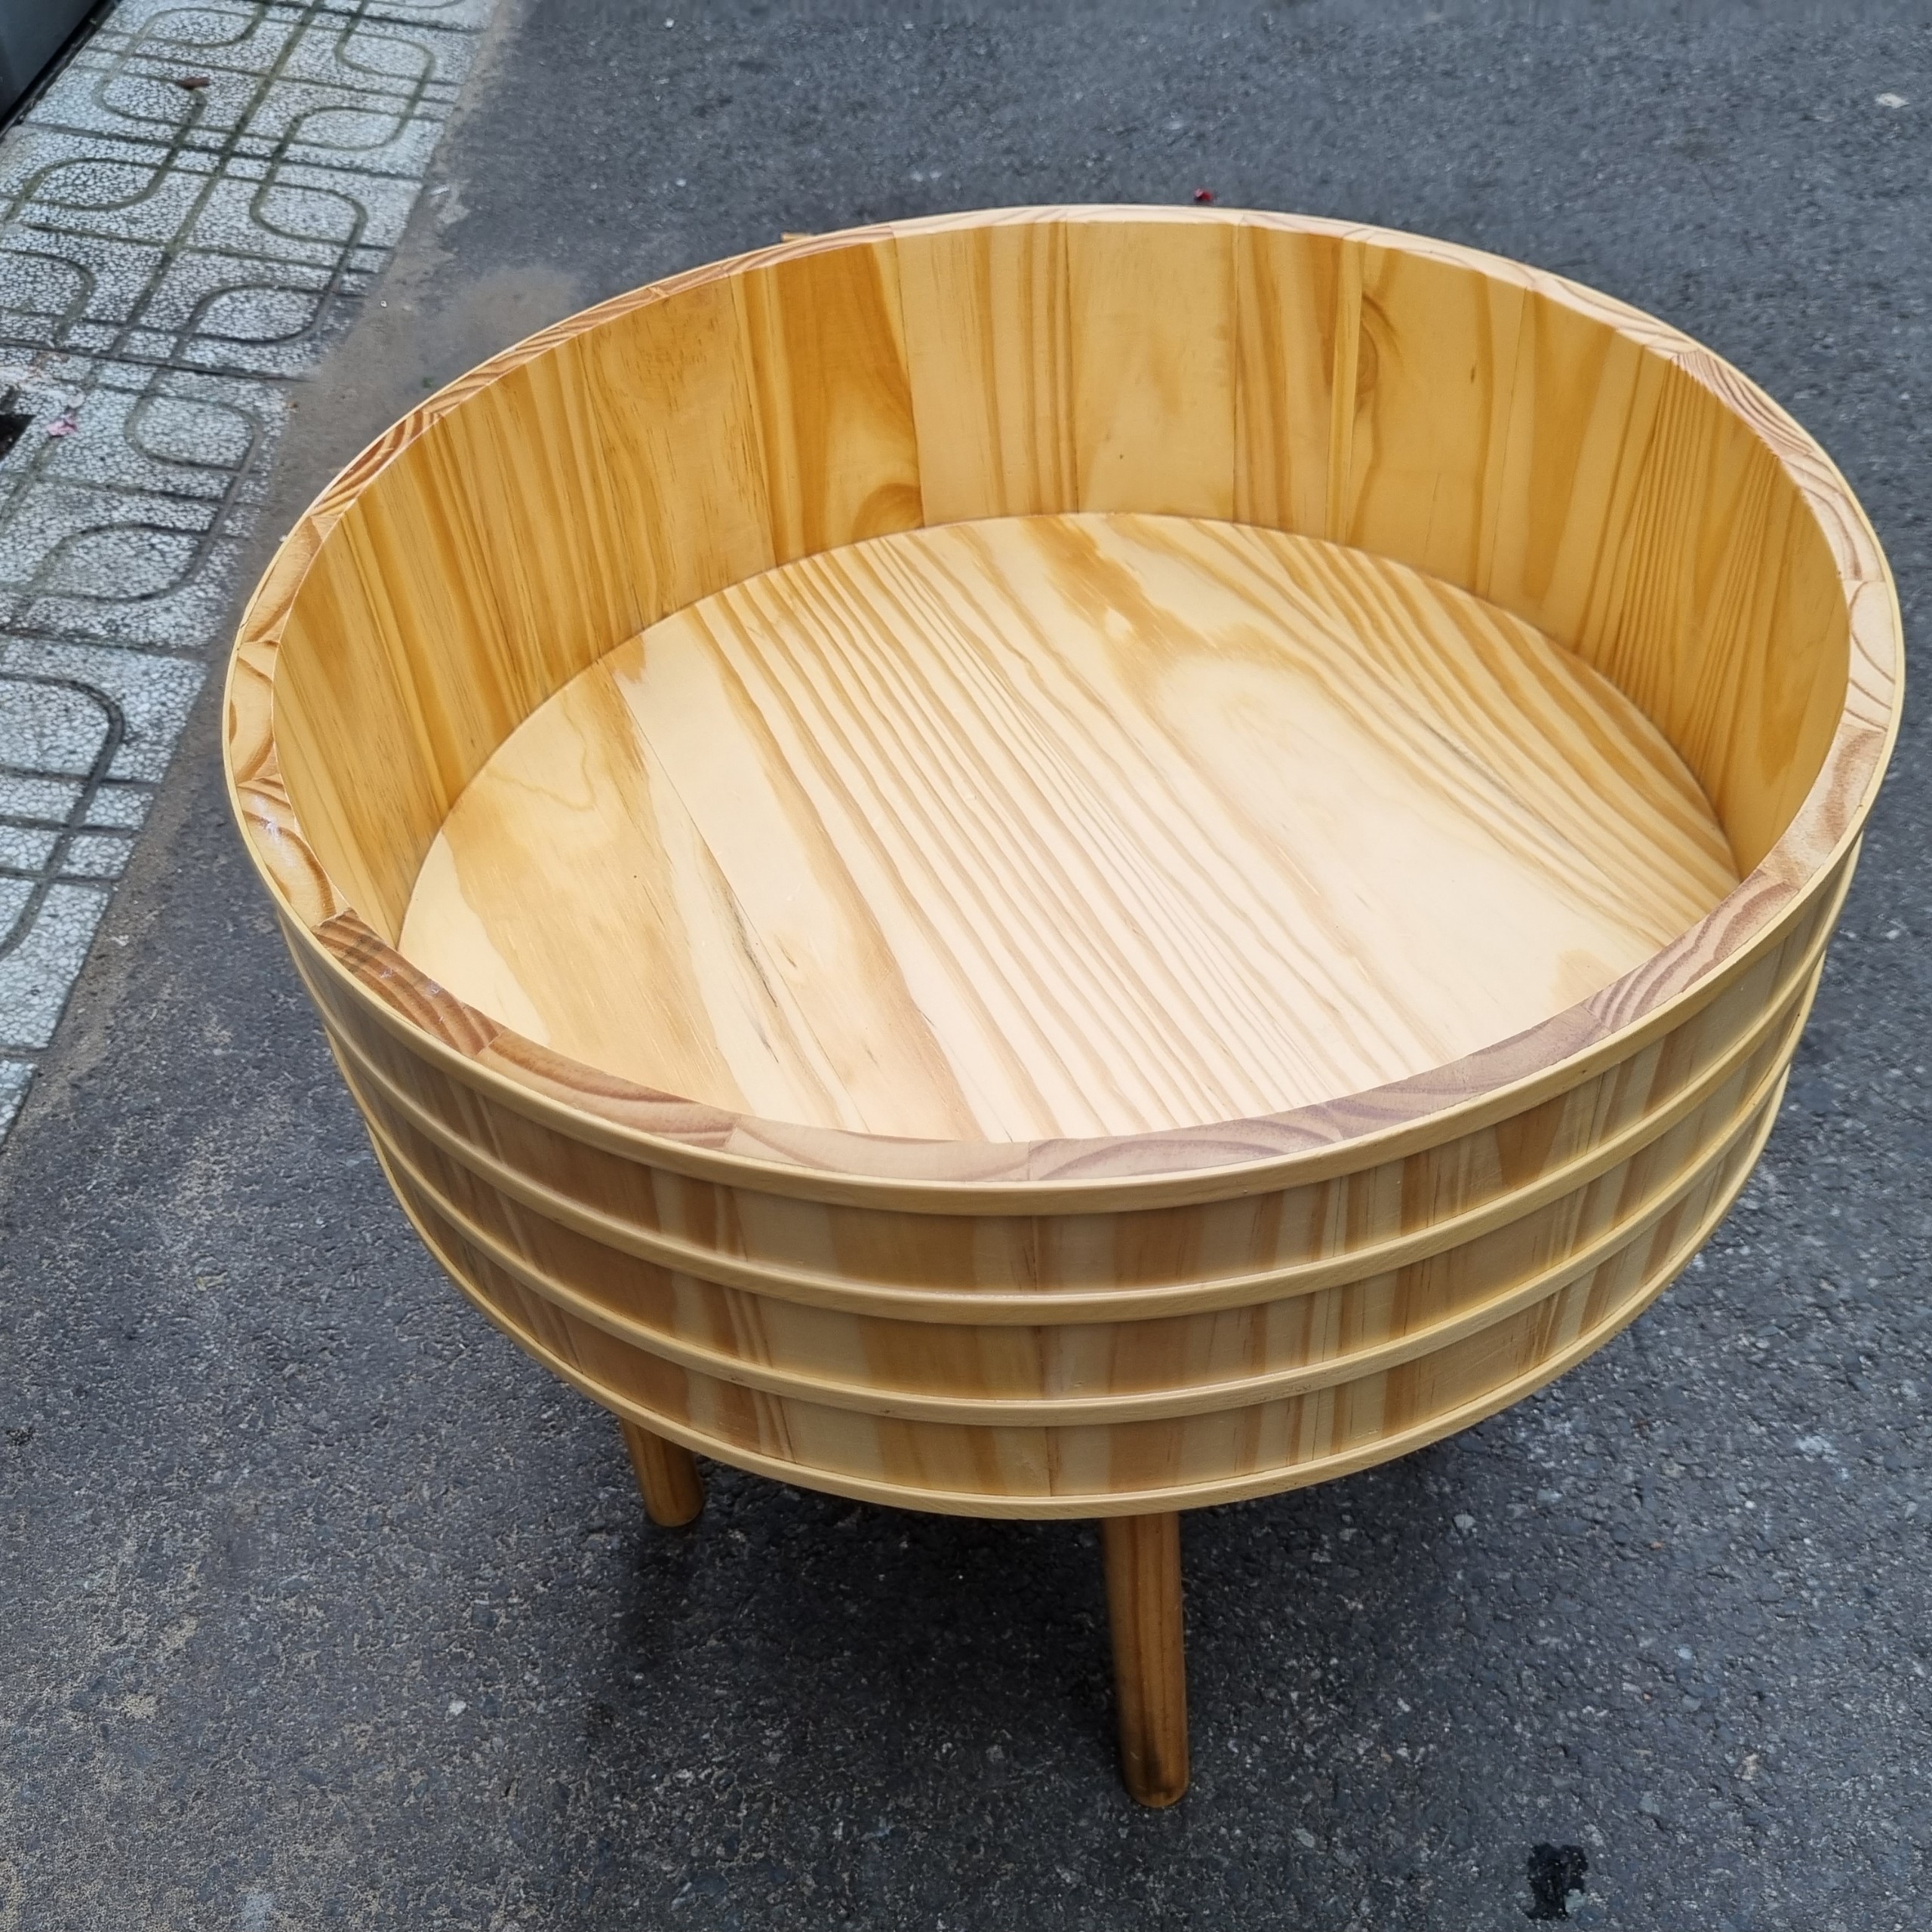 Thố gỗ đánh cơm Sushi _ Thố gỗ trang trí Sashimi Φ 40cm - Cao 15cm - Gỗ thông tự nhiên